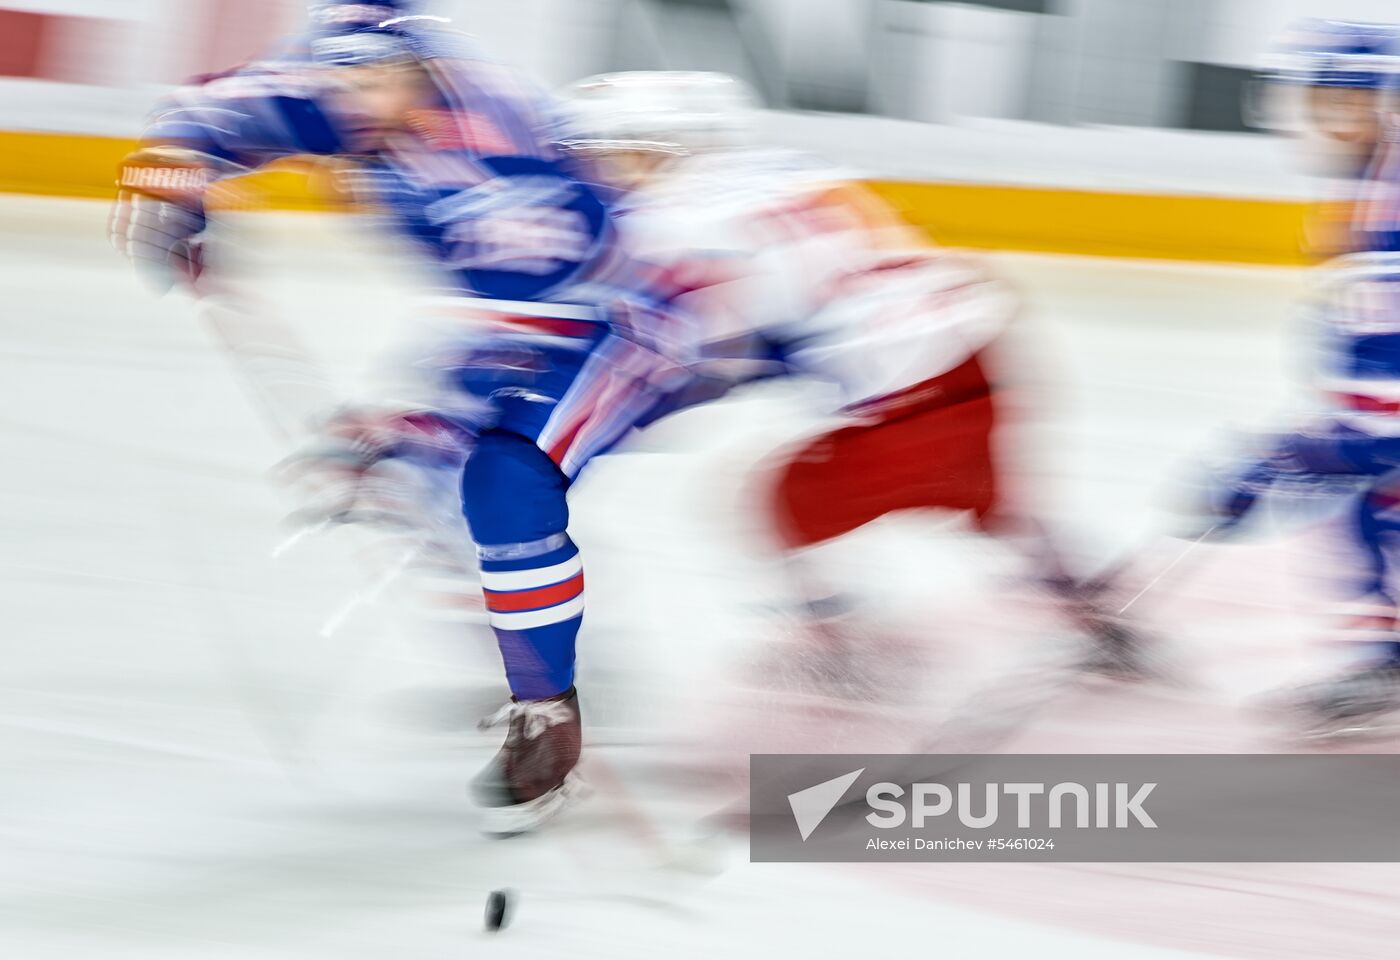 KHL. SKA vs Lokomotiv